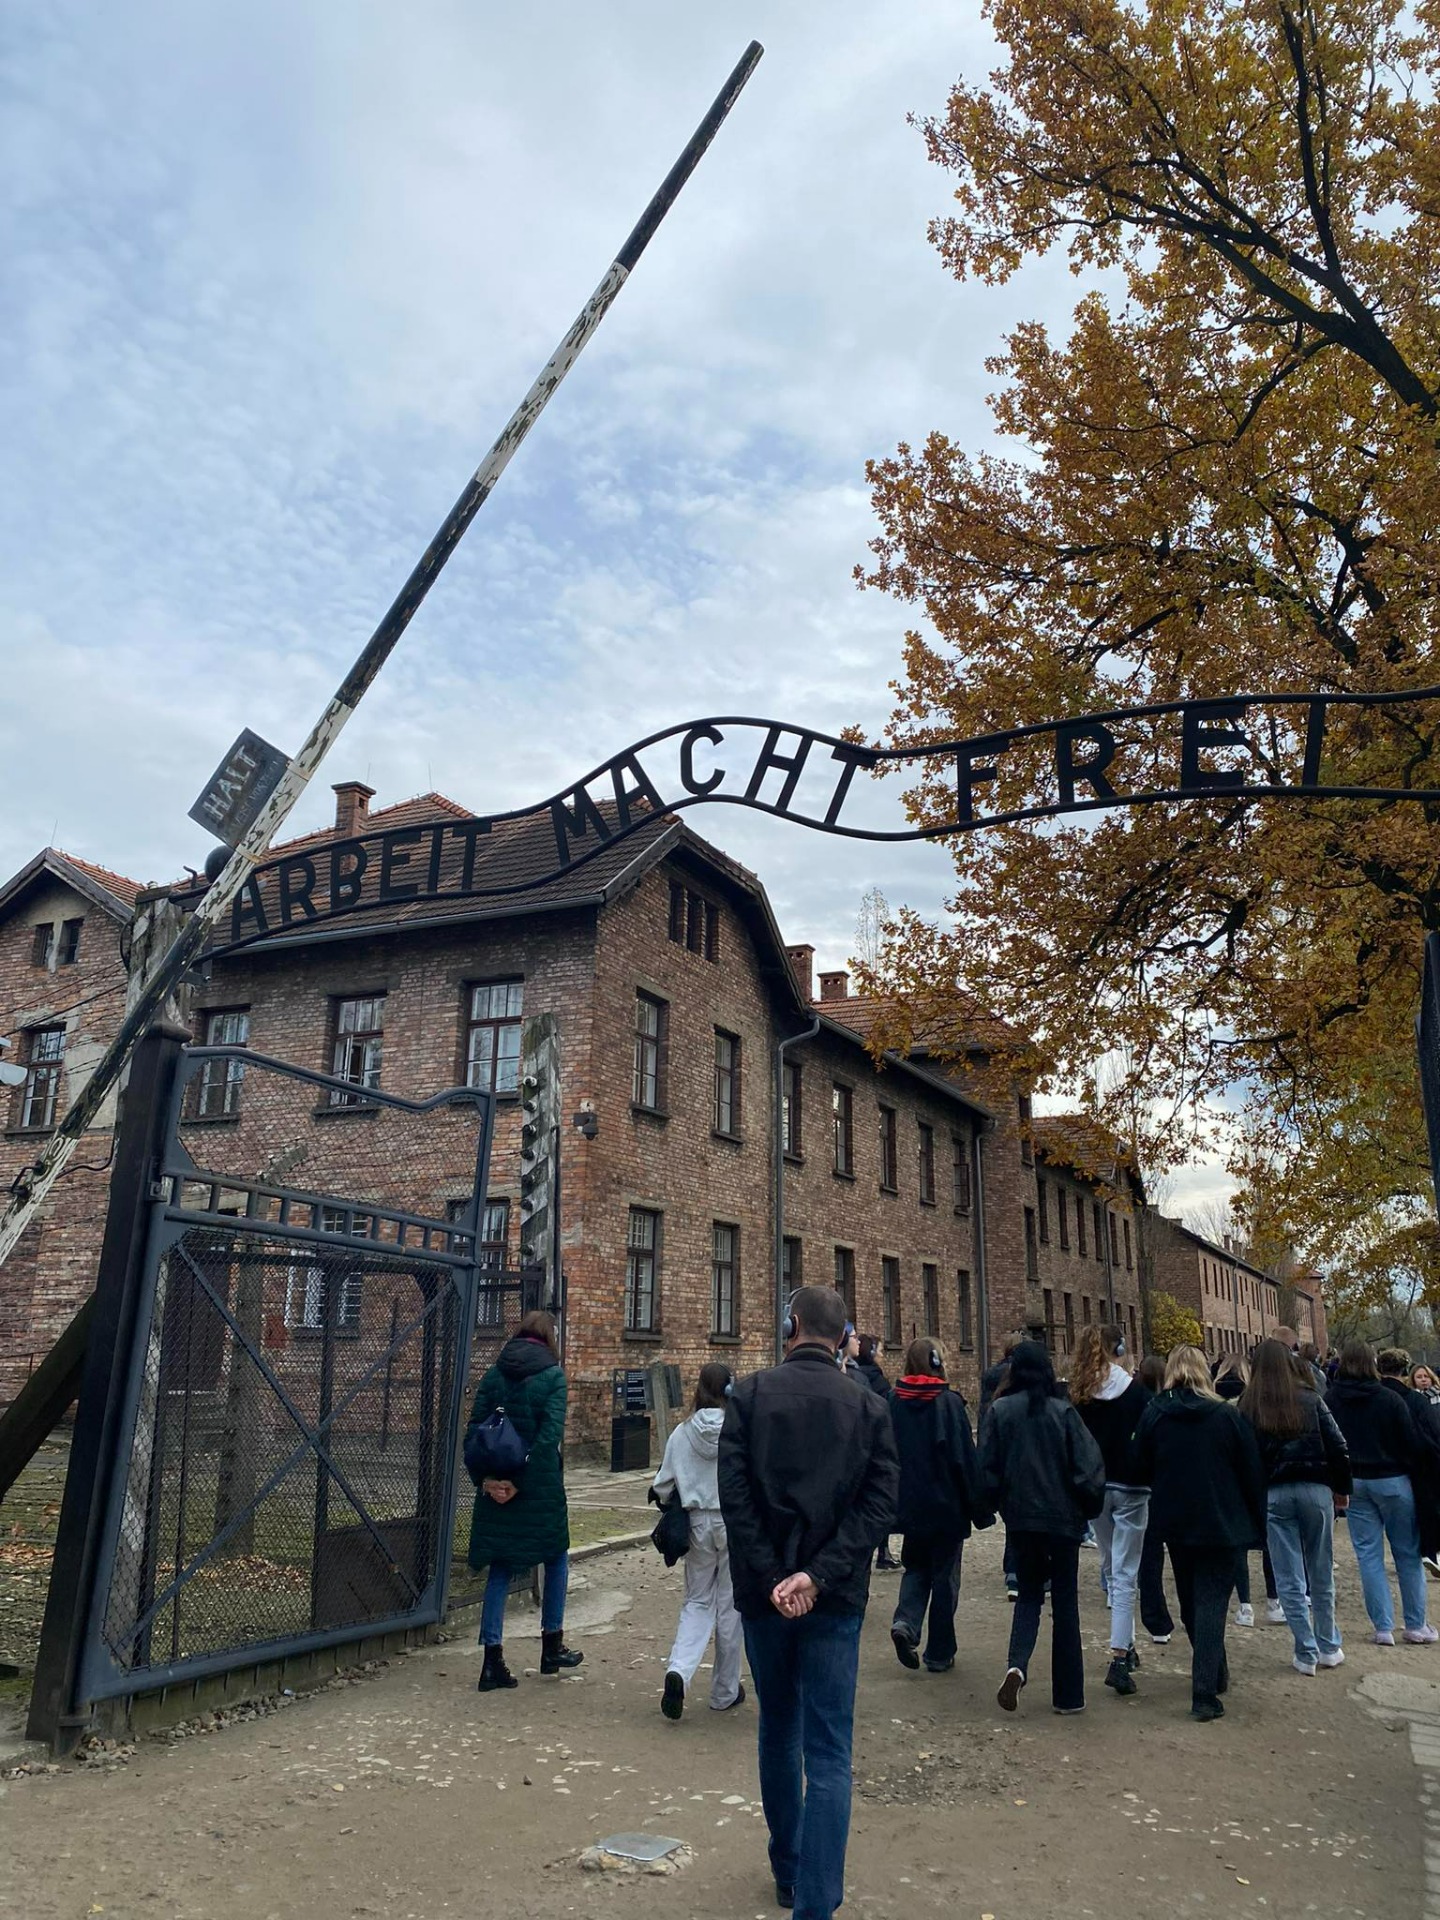 Młodzież przekraczająca bramę Auschwitz z napisem "Arbeit macht frei"